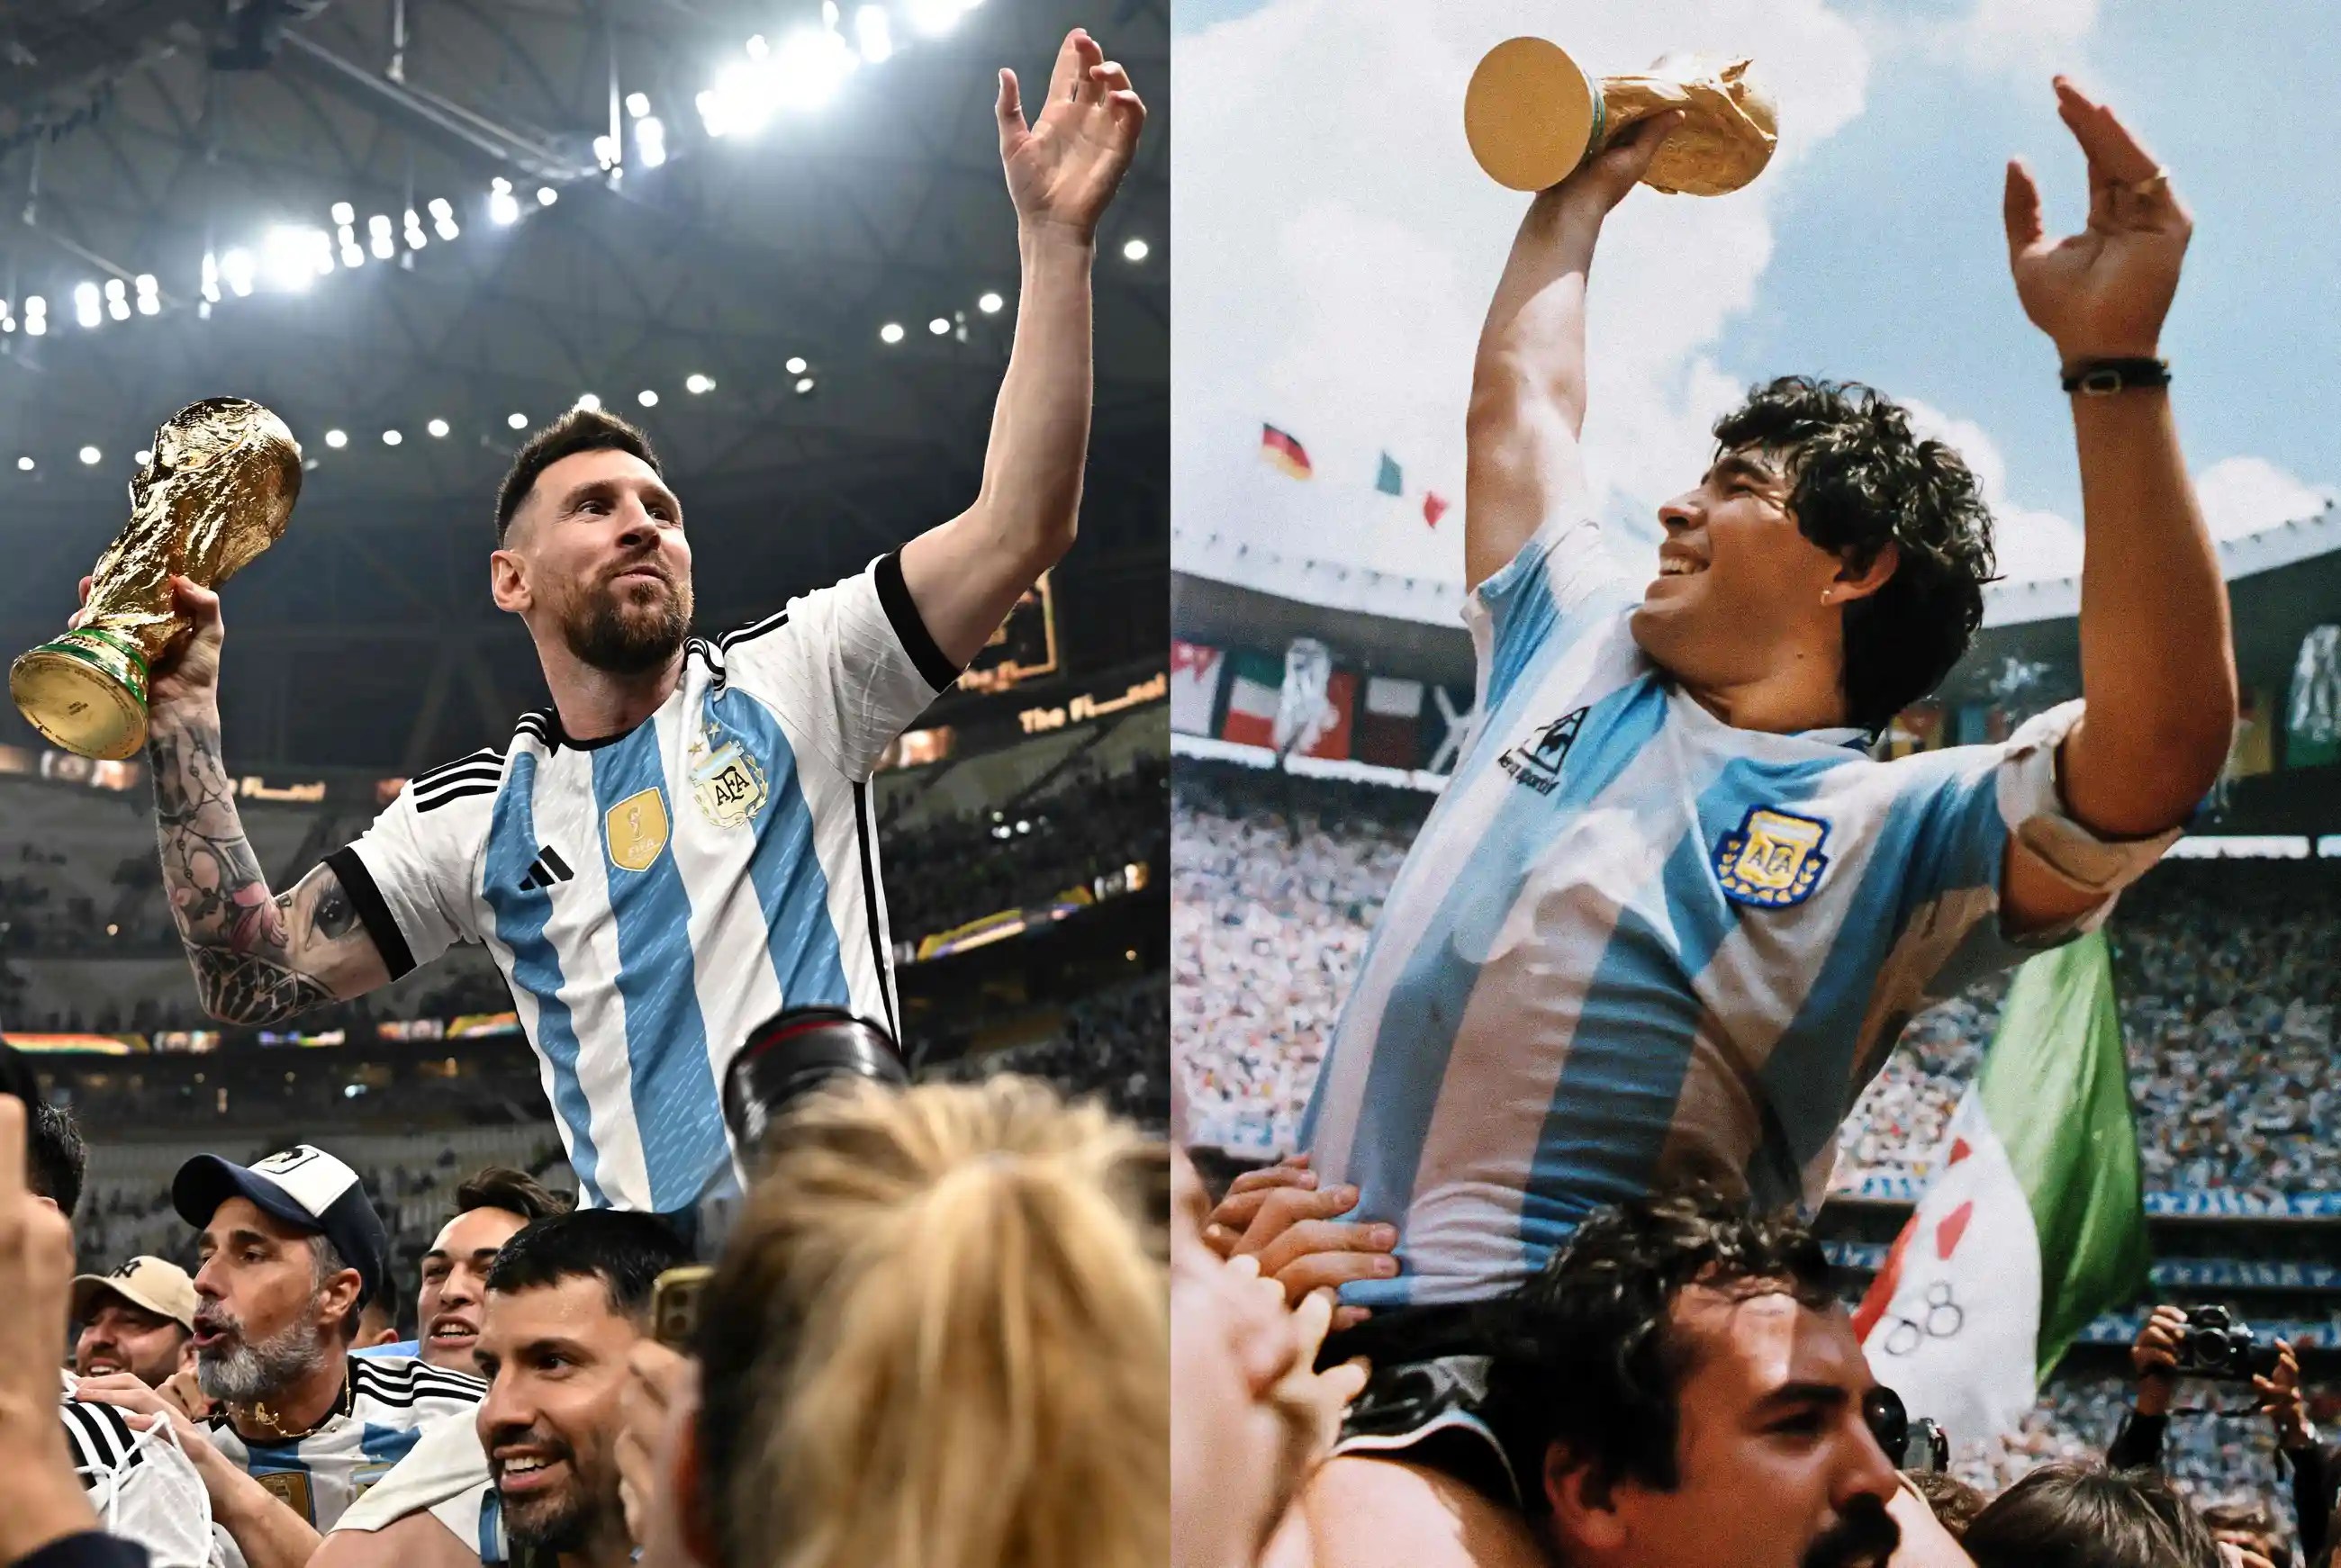 Piala Dunia Messi: Lionel Messi membagikan video yang mengharukan untuk memberikan PENGHARGAAN kepada IDOL Diego Maradona setelah kemenangan Piala Dunia FIFA